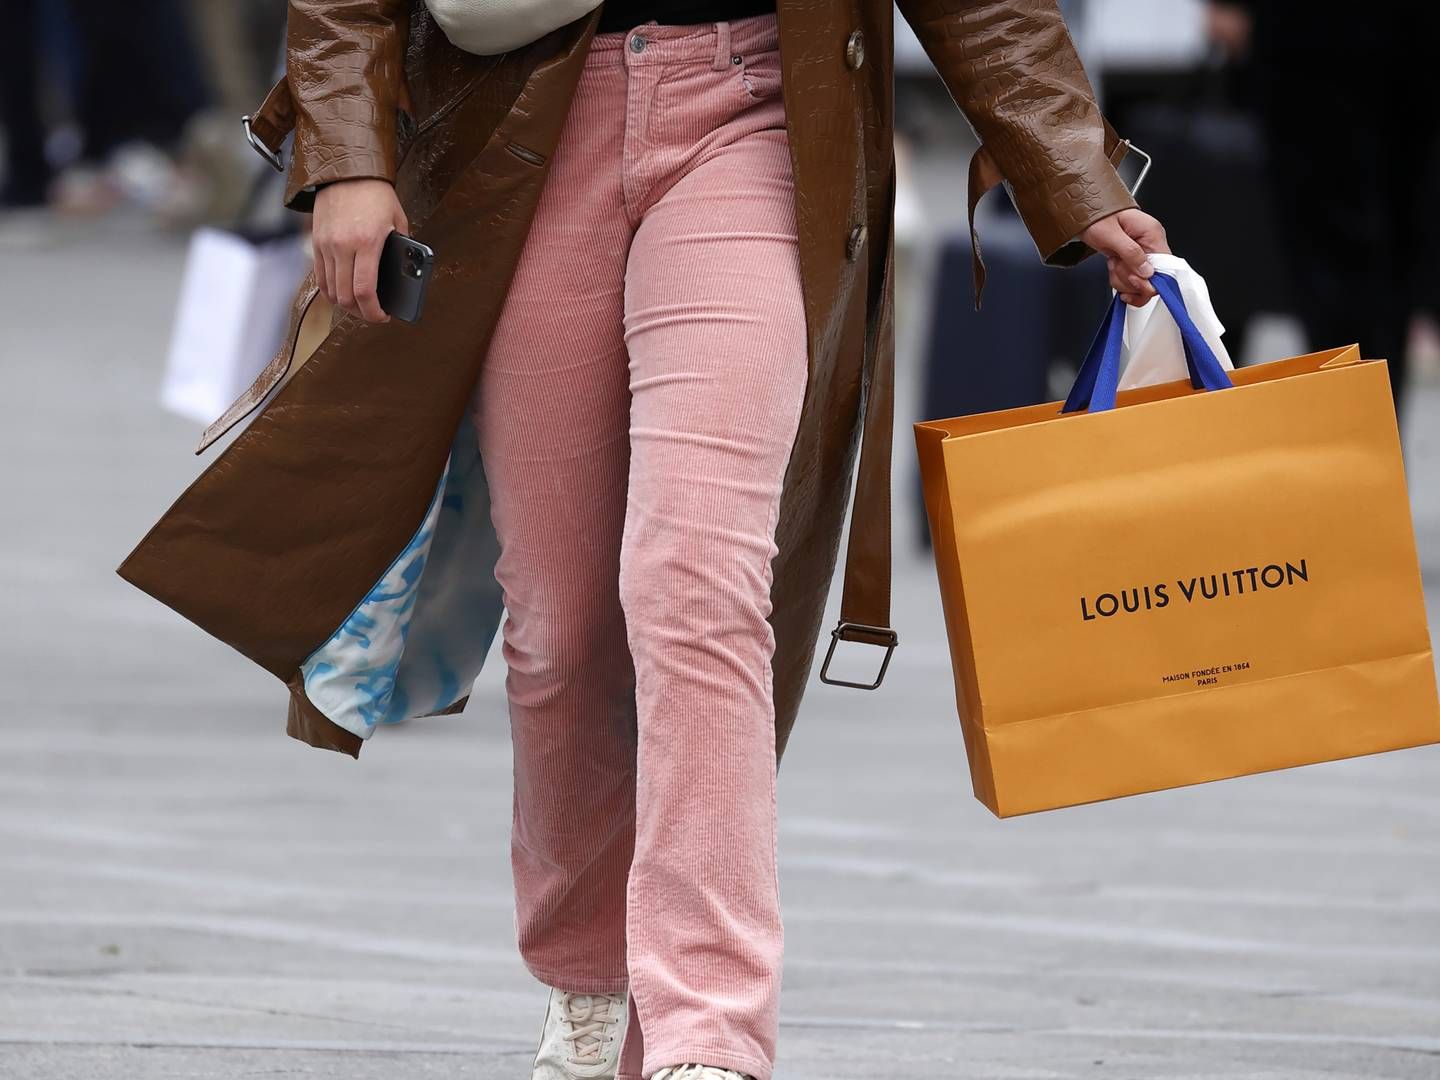 Manden blev i november sidste år stoppet i tolden i lufthavnen, hvor han blandt andet havde fem taskesæt, der skulle forestille Louis Vuitton-tasker. | Foto: Jens Dresling